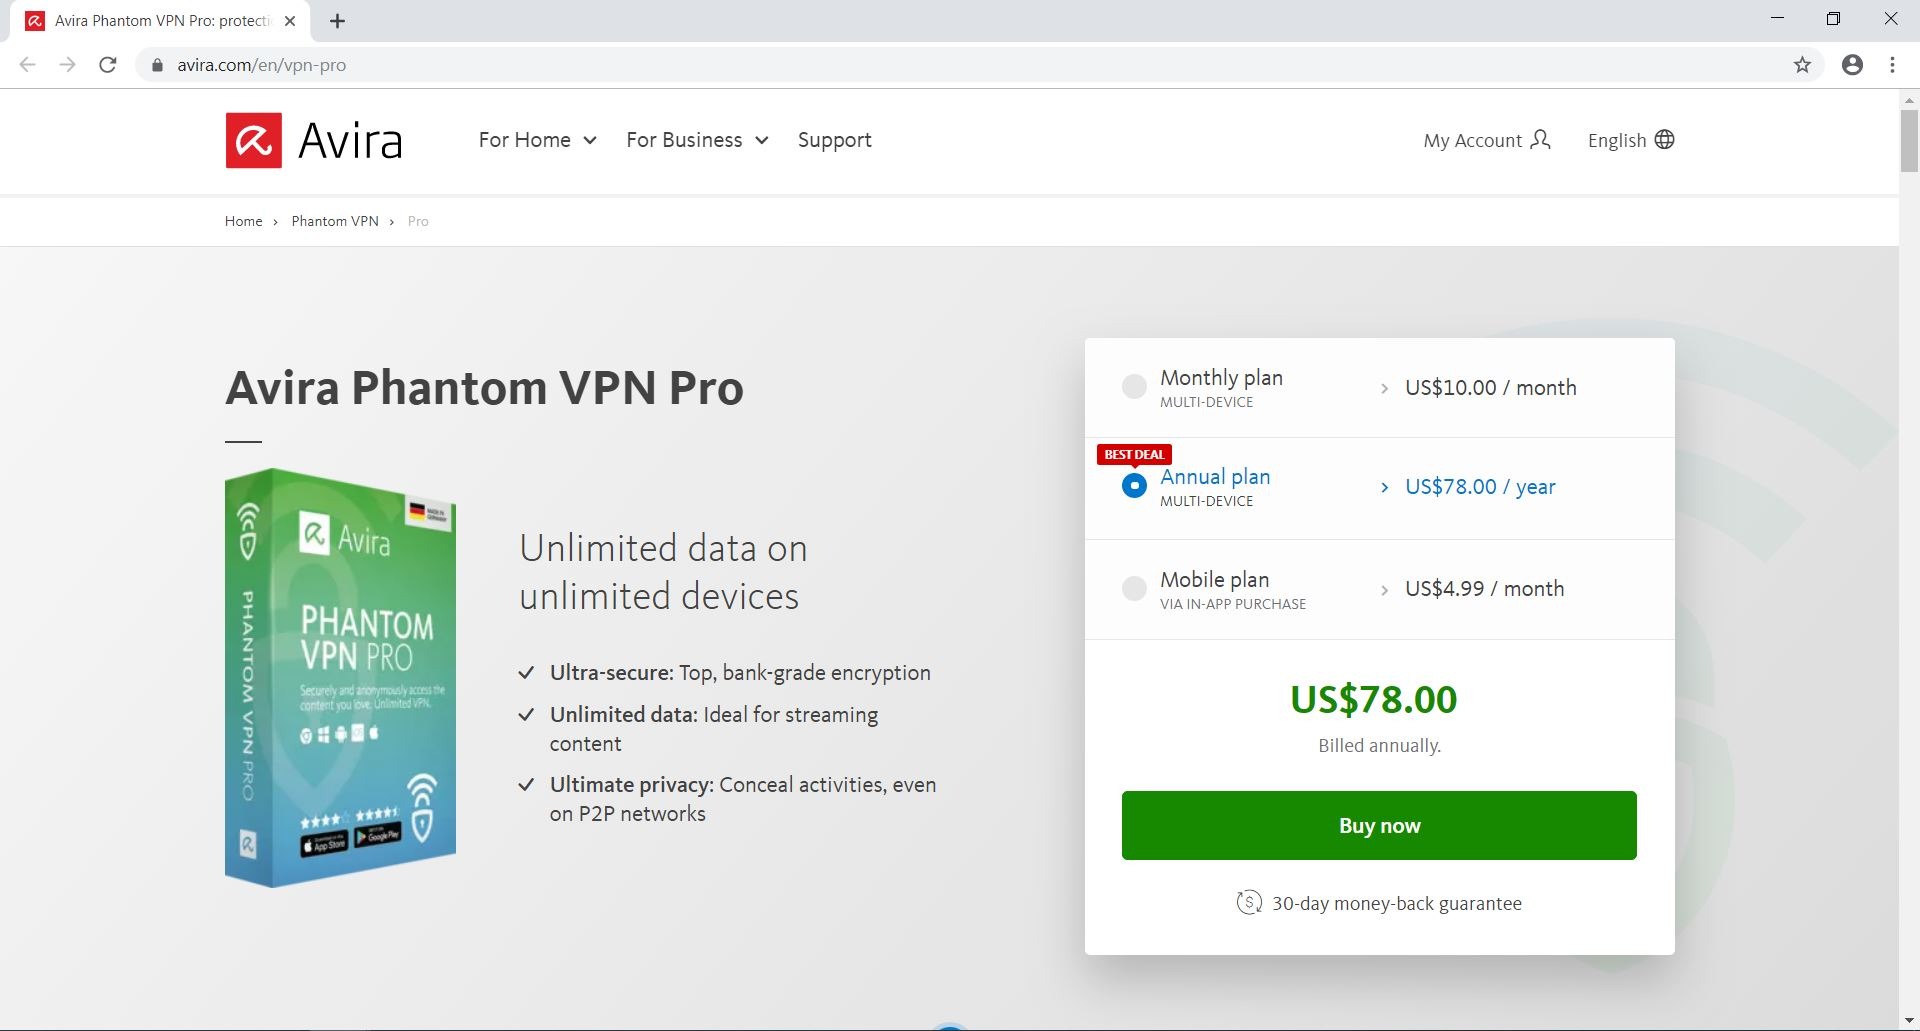 product description of the Avira Phantom VPN